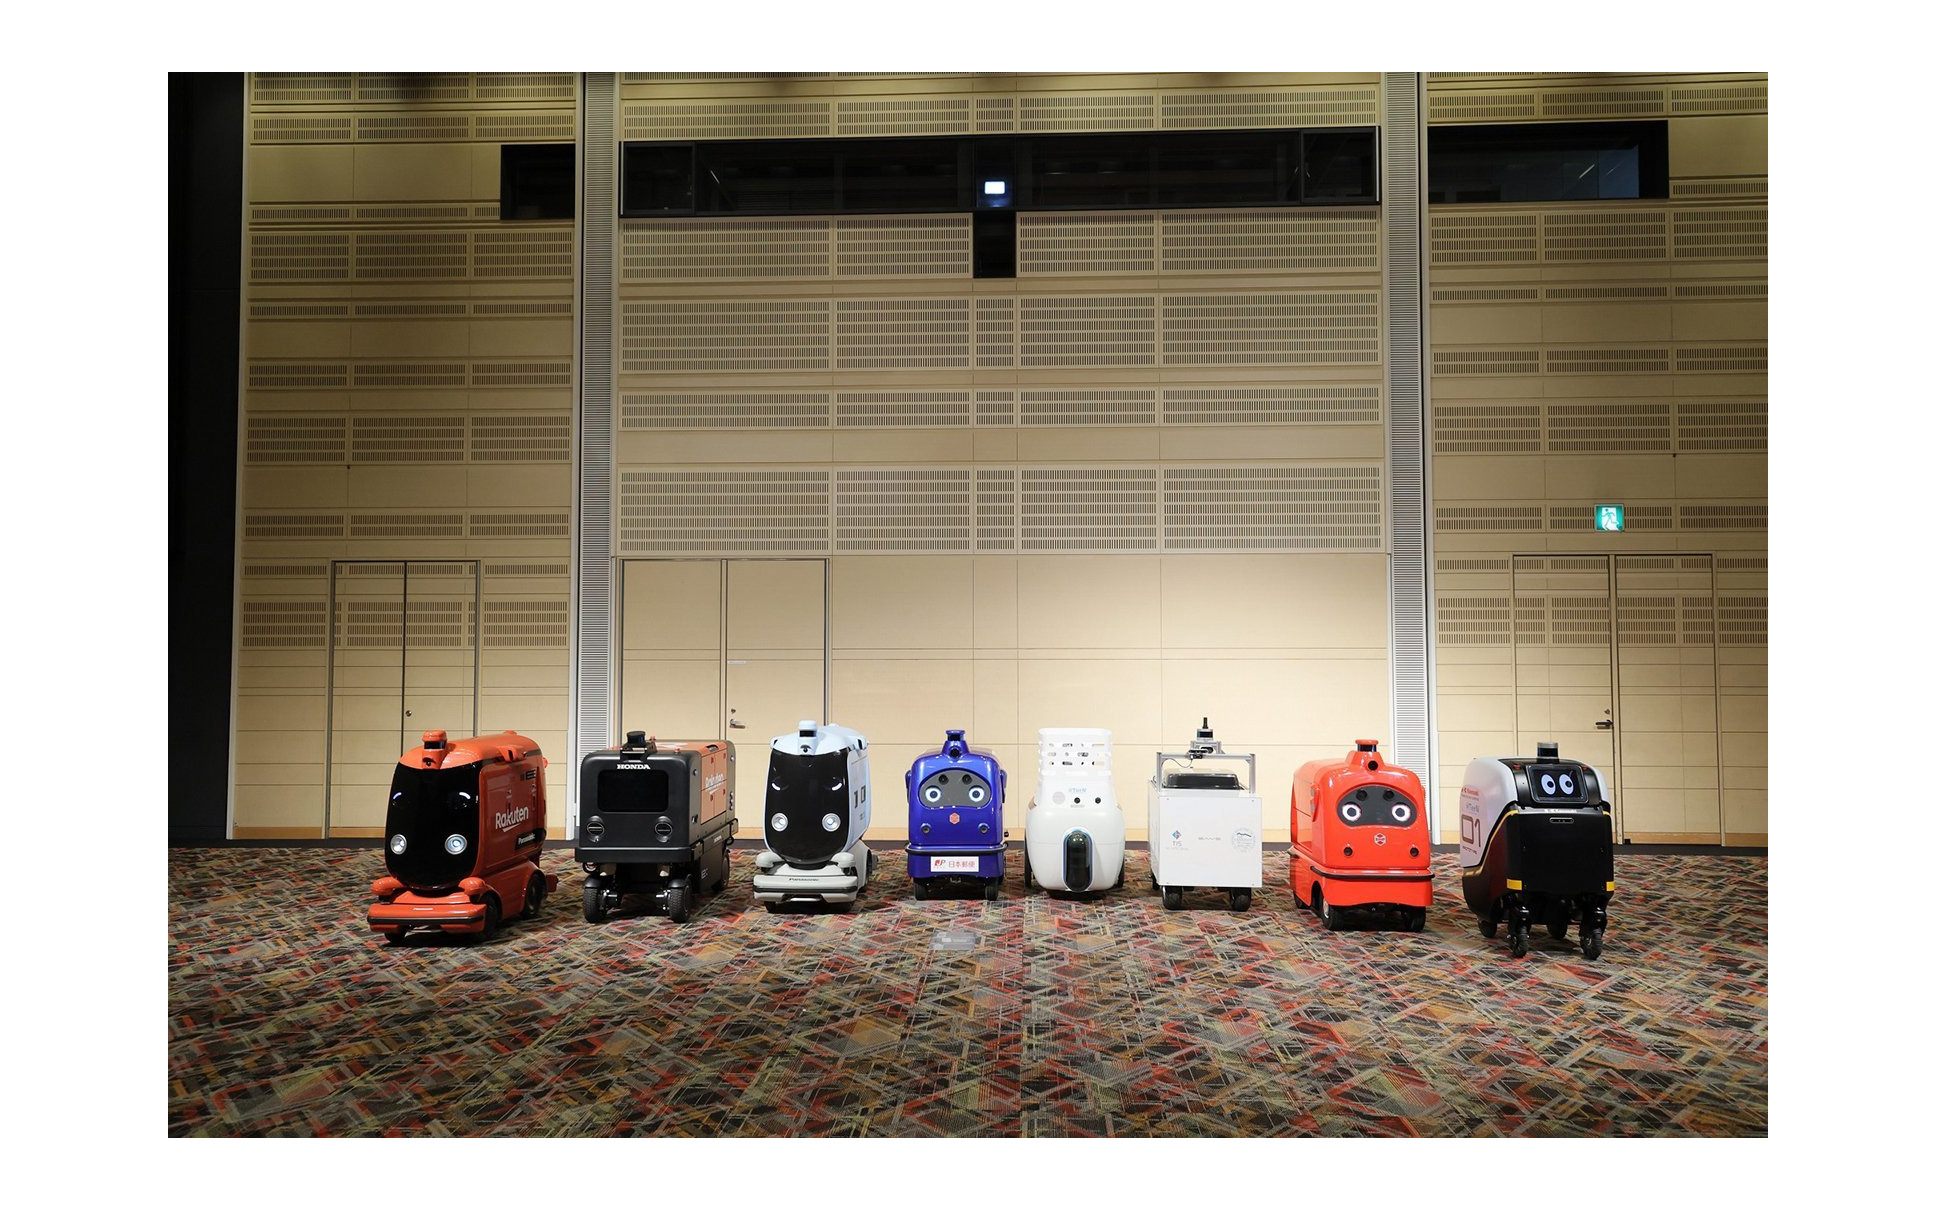 ロボットデリバリー協会各社の自動配送ロボット：向かって右から川崎重工業、ZMP、TIS、ティアフォー、日本郵便、パナソニック、本田技研工業、楽天グループ